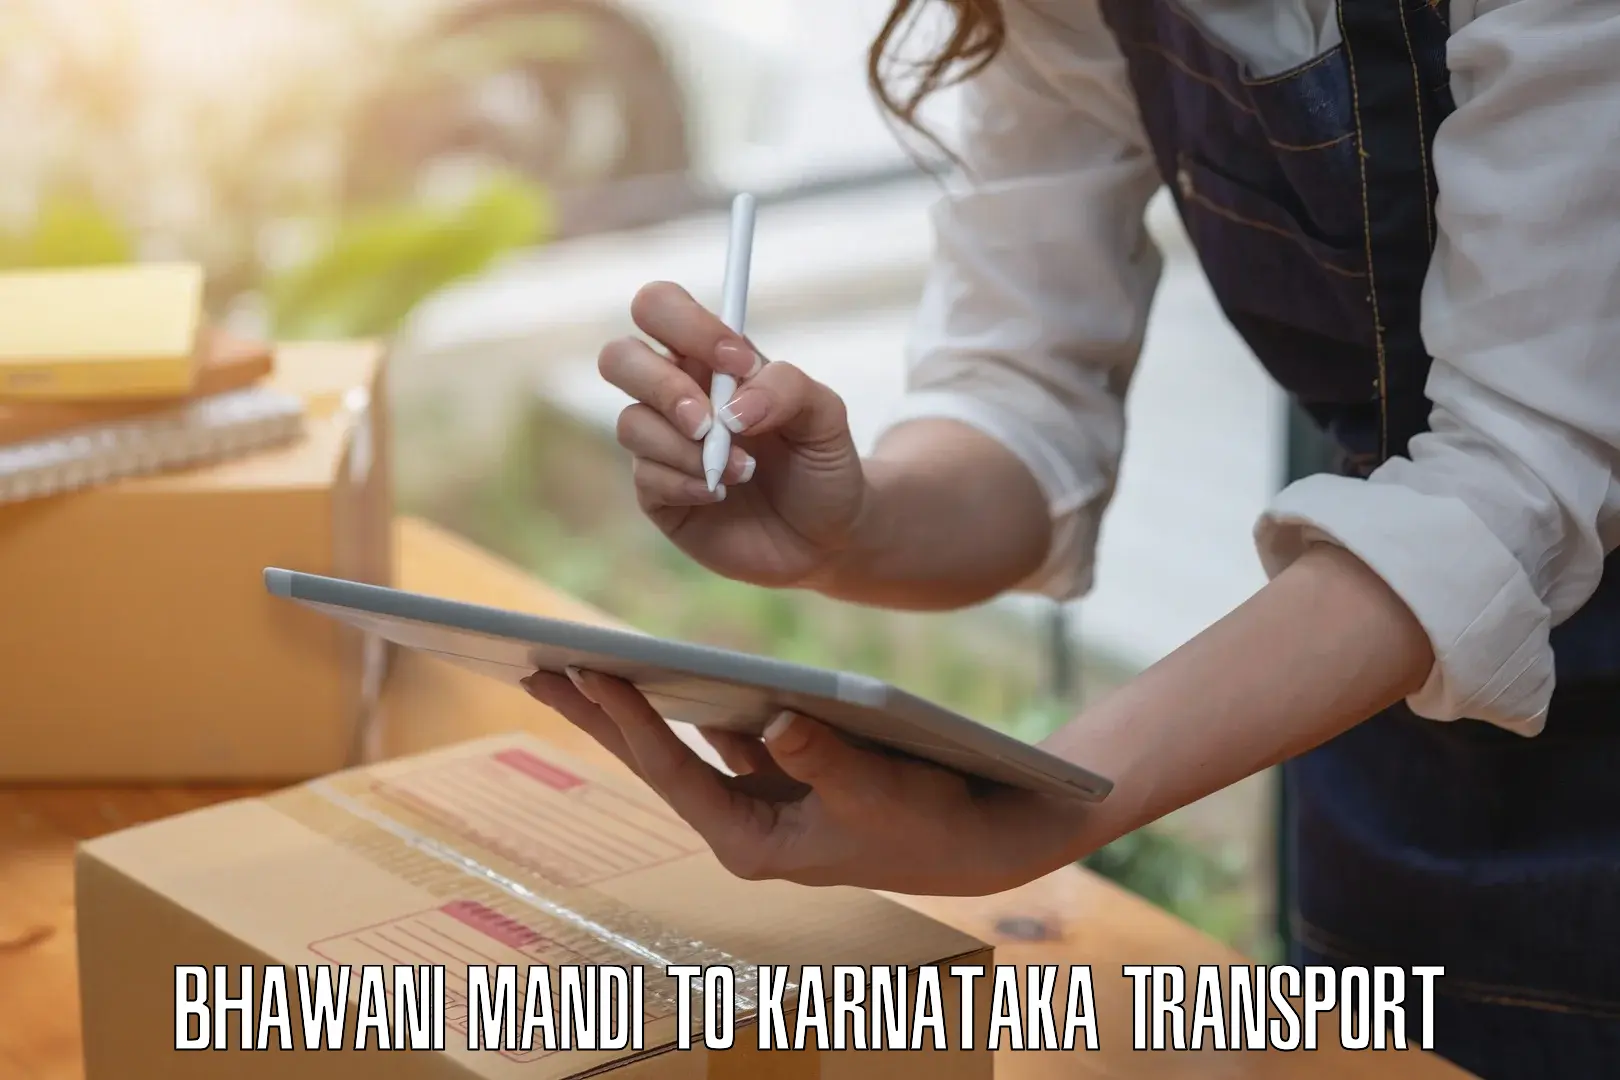 Transportation services Bhawani Mandi to Mangalore Port